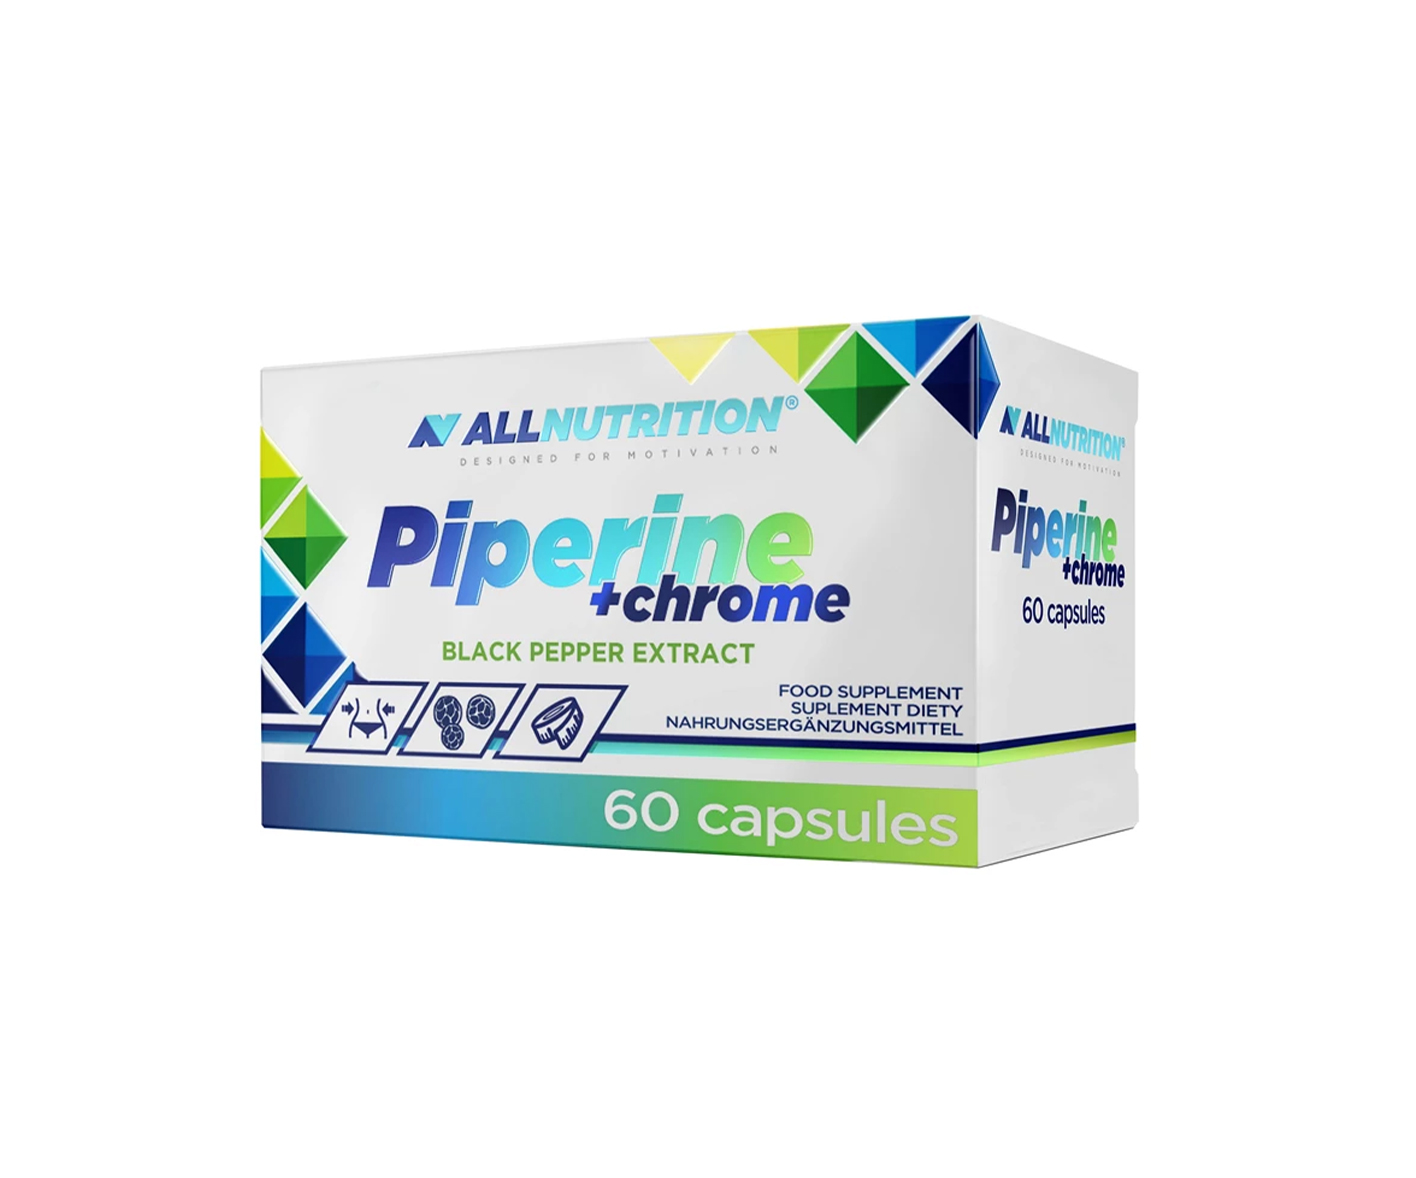 Allnutrition, Piperine + chrome